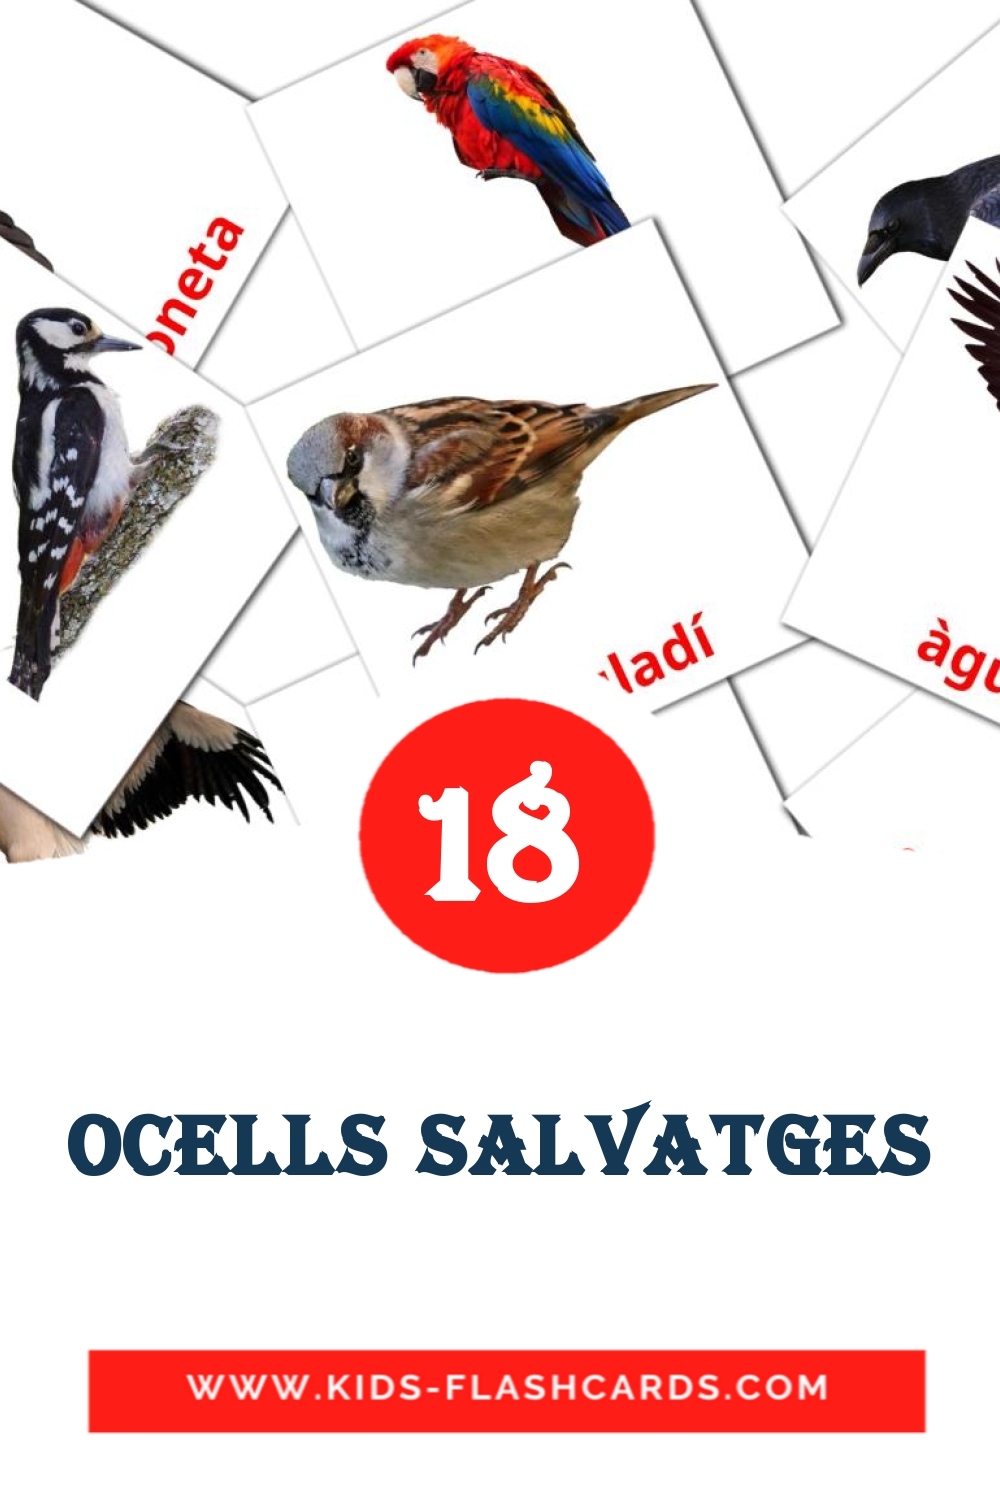 Ocells salvatges на каталонском для Детского Сада (18 карточек)